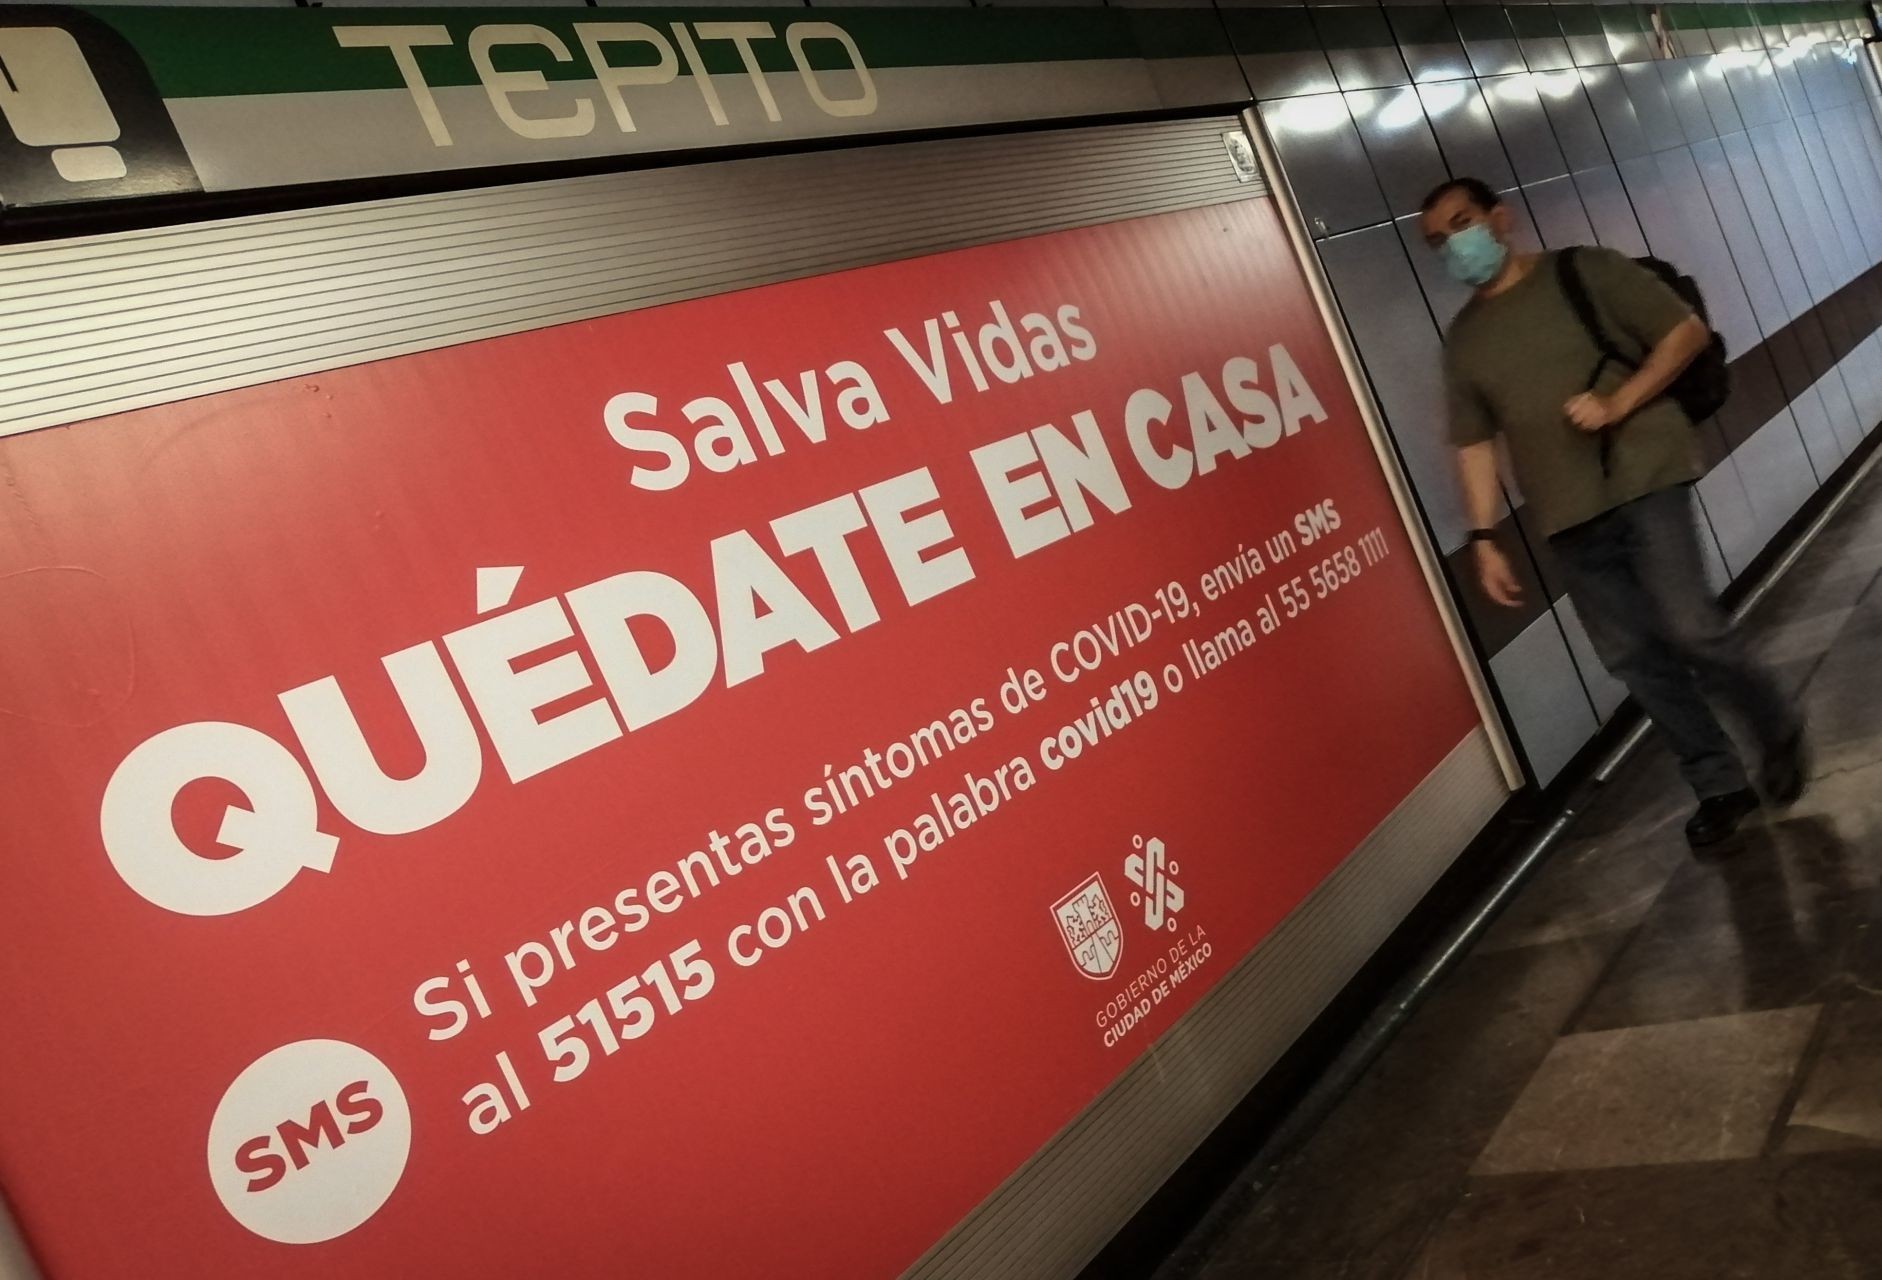 Foto: Mensajes en el Metro invitan a la gente a quedarse en casa, 23 de abril de 2020, (ANDREA MURCIA /CUARTOSCURO.COM)